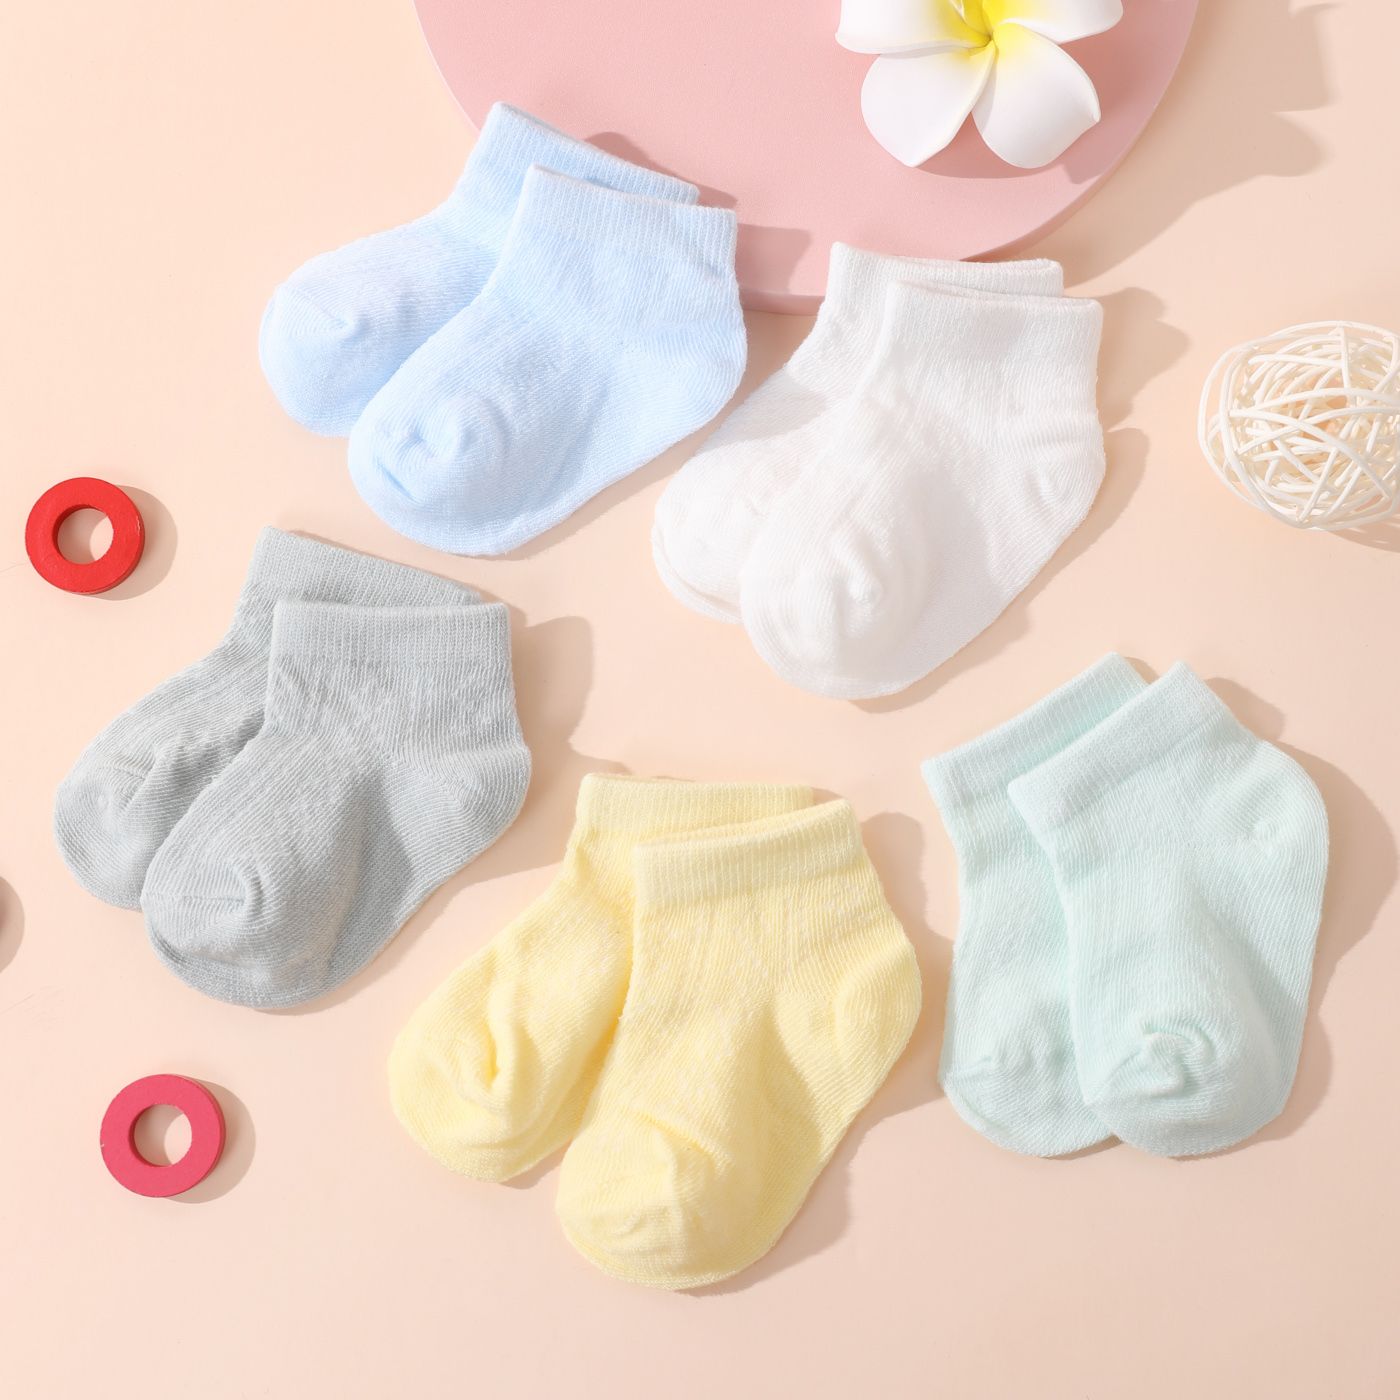 5件裝嬰兒/幼兒/兒童純色透氣襪子套裝